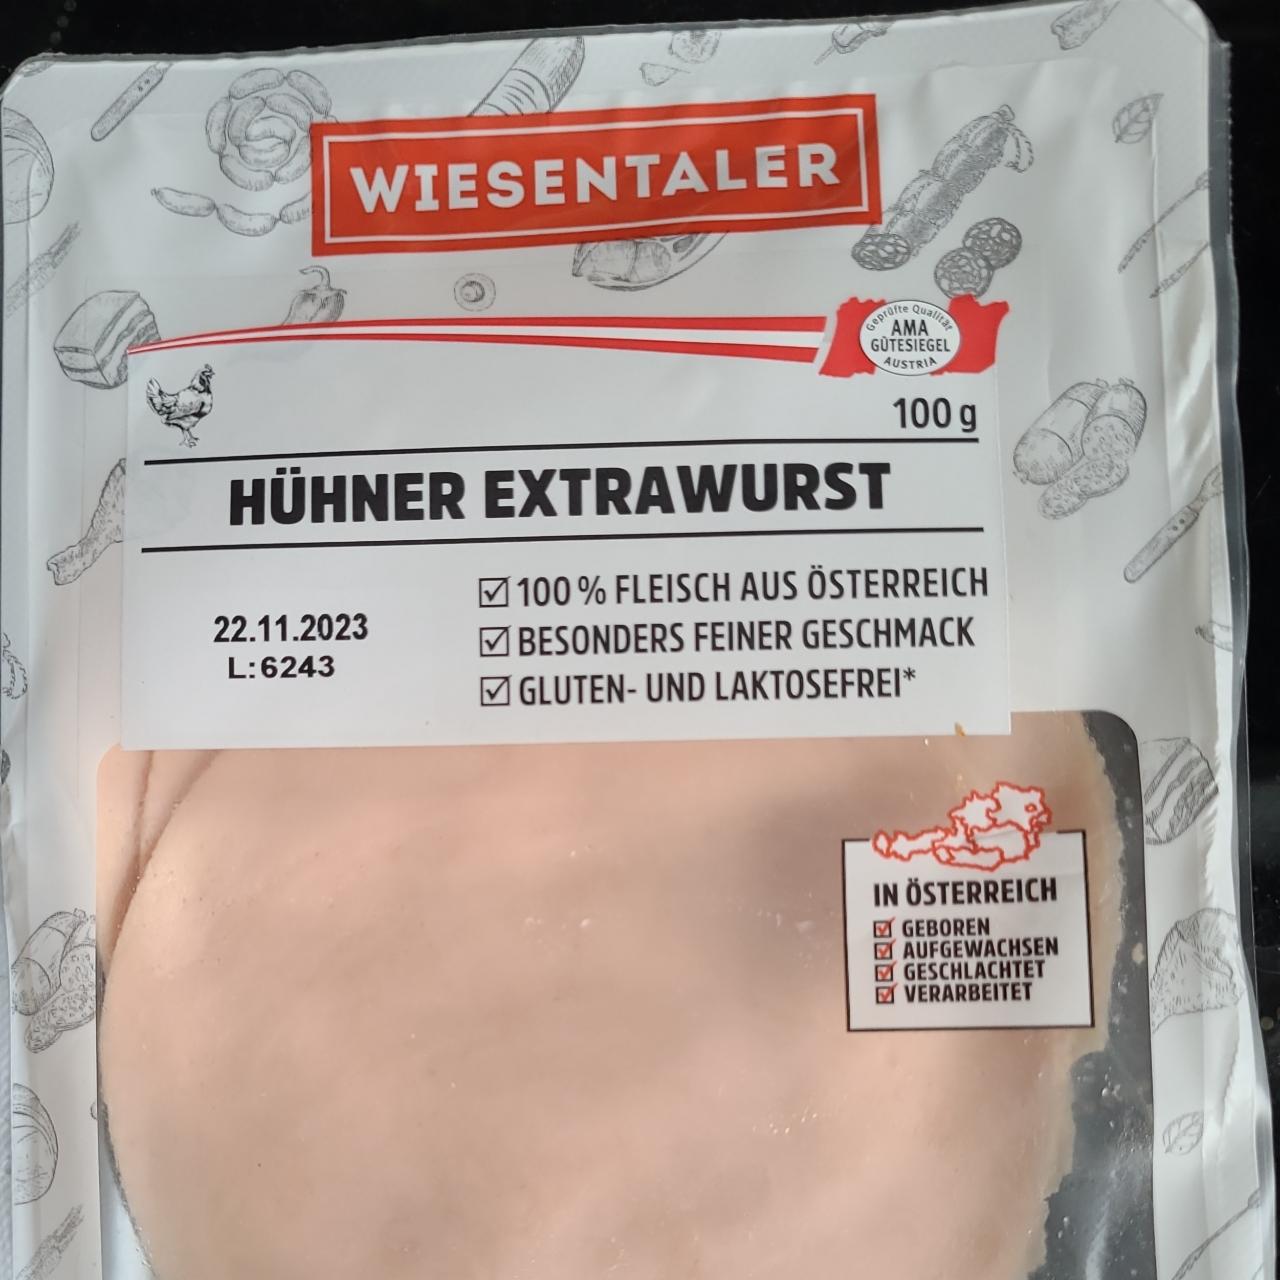 Fotografie - Hühner Extrawurst Wiesentaler